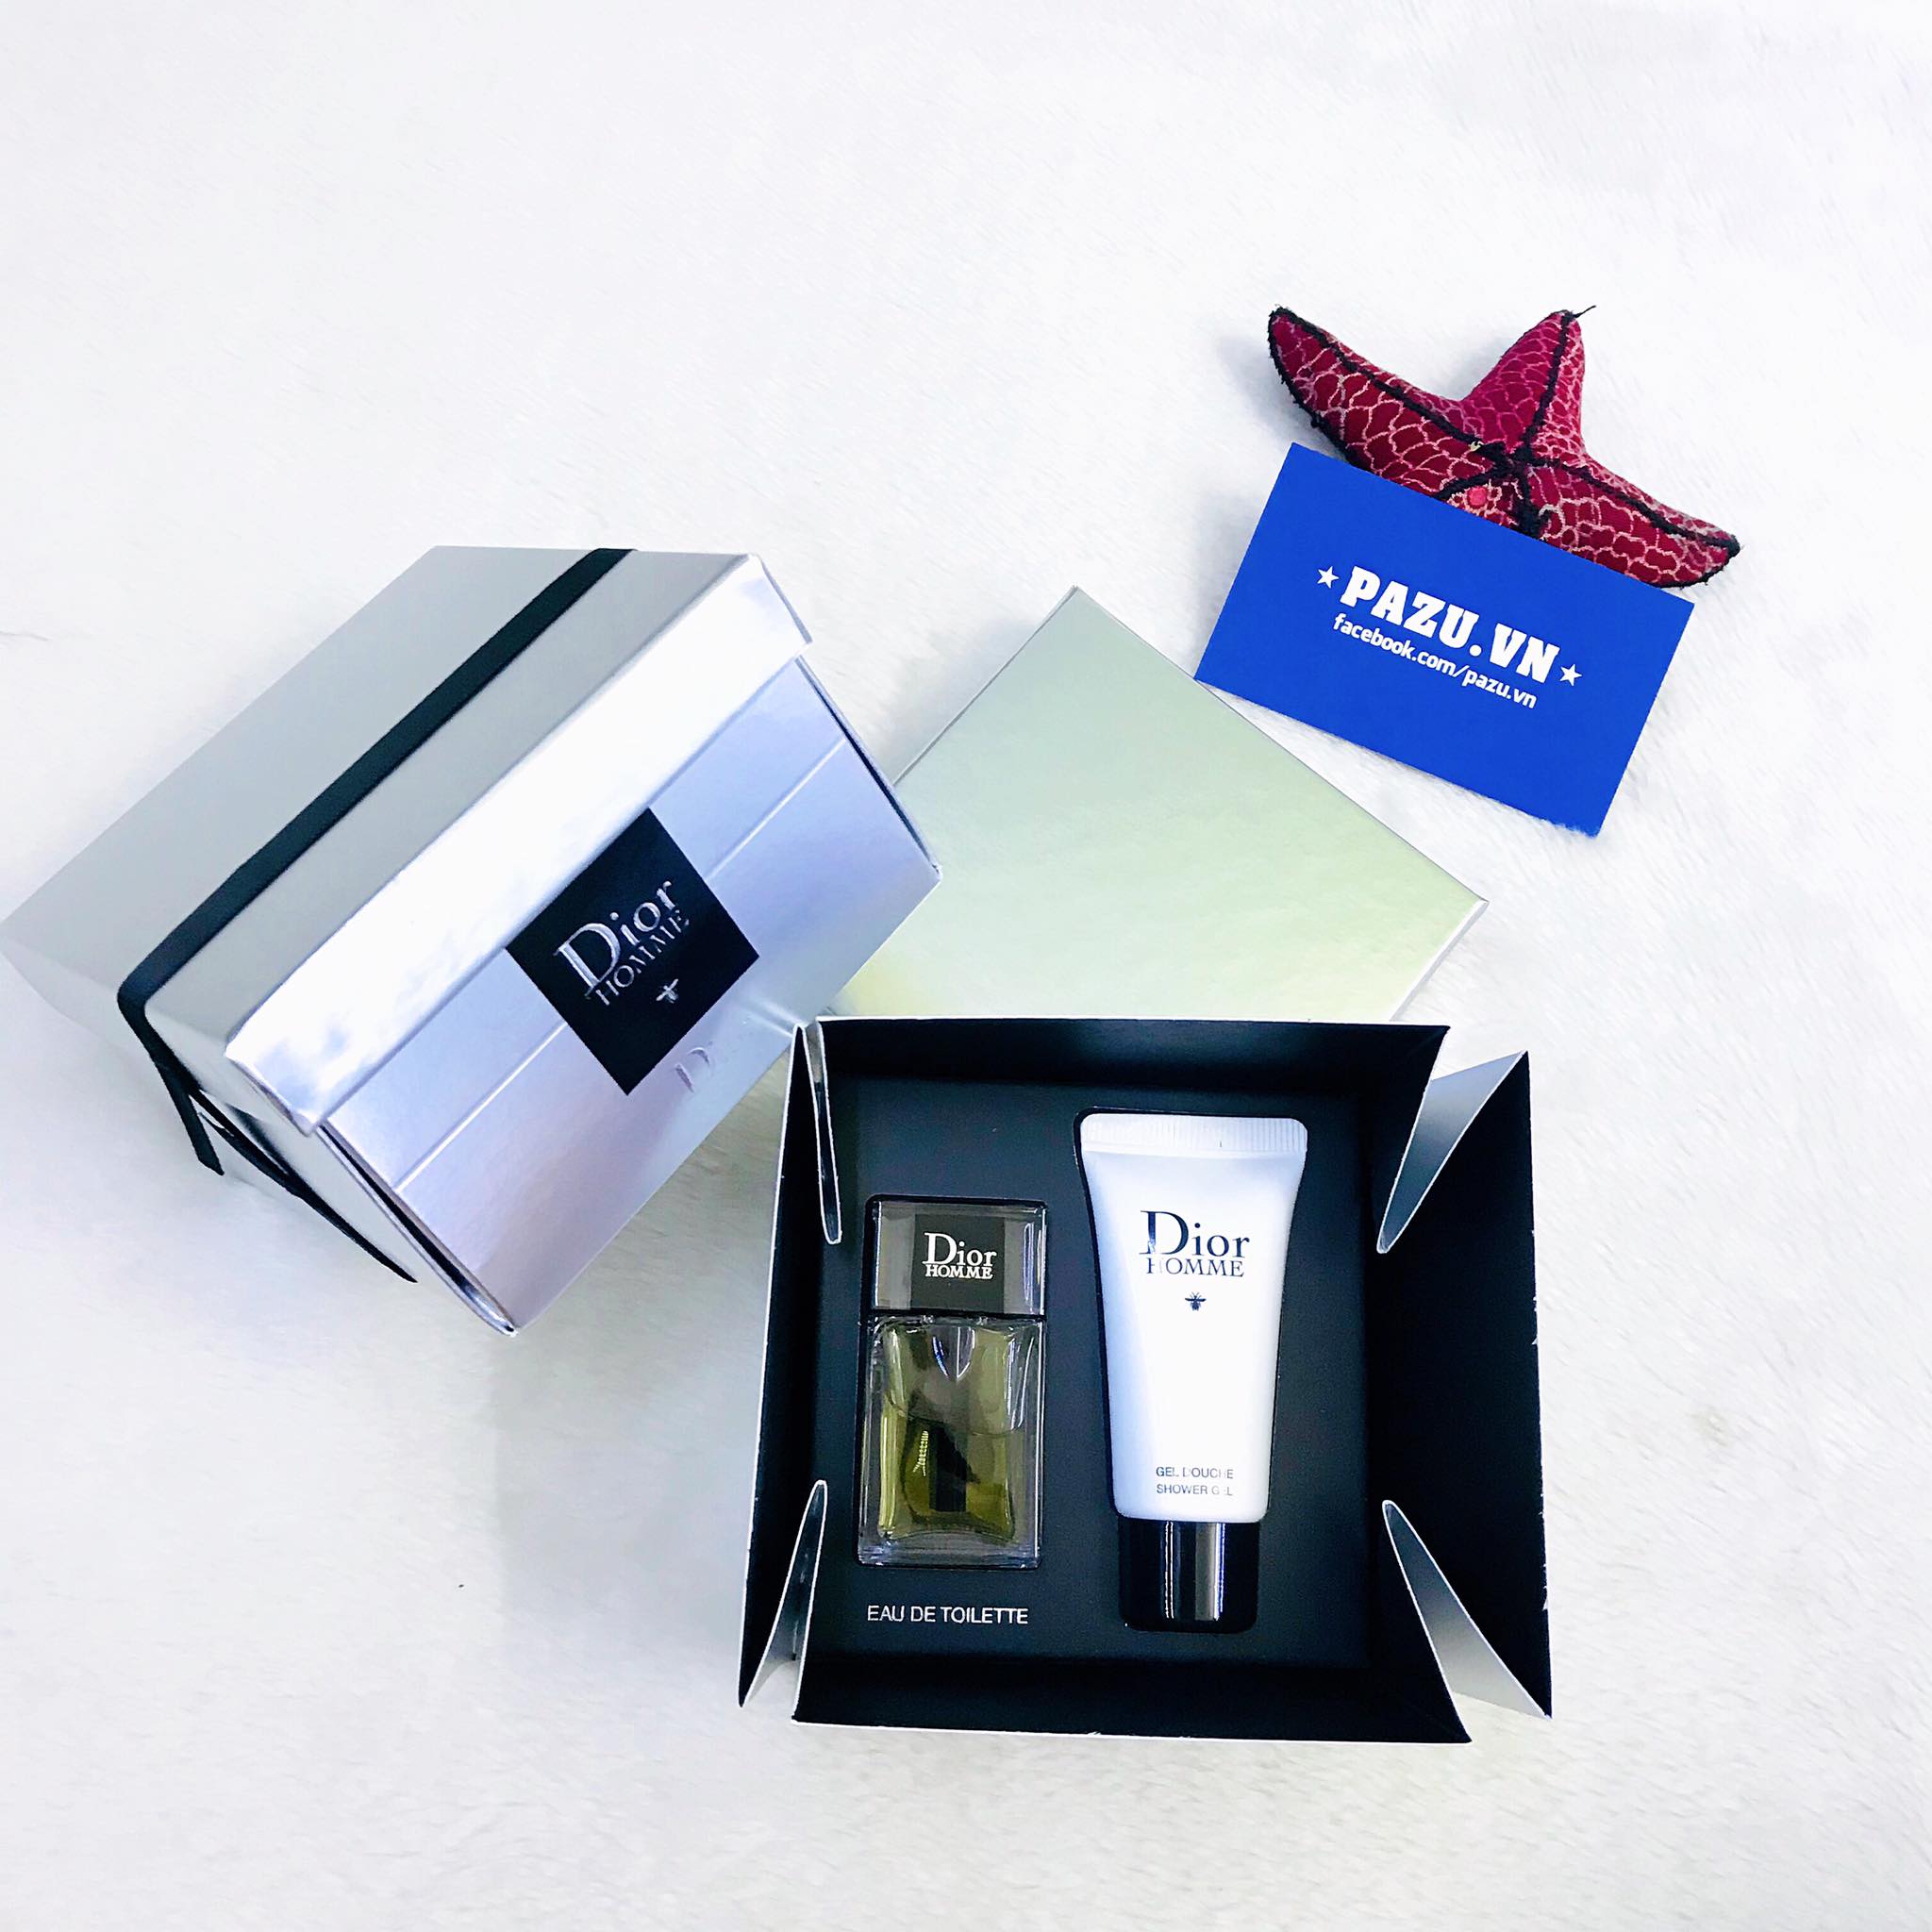 Amazoncom  Christian Dior Homme Eau de Toilette Spray for Men Vial Mini  003 Ounce  Beauty  Personal Care